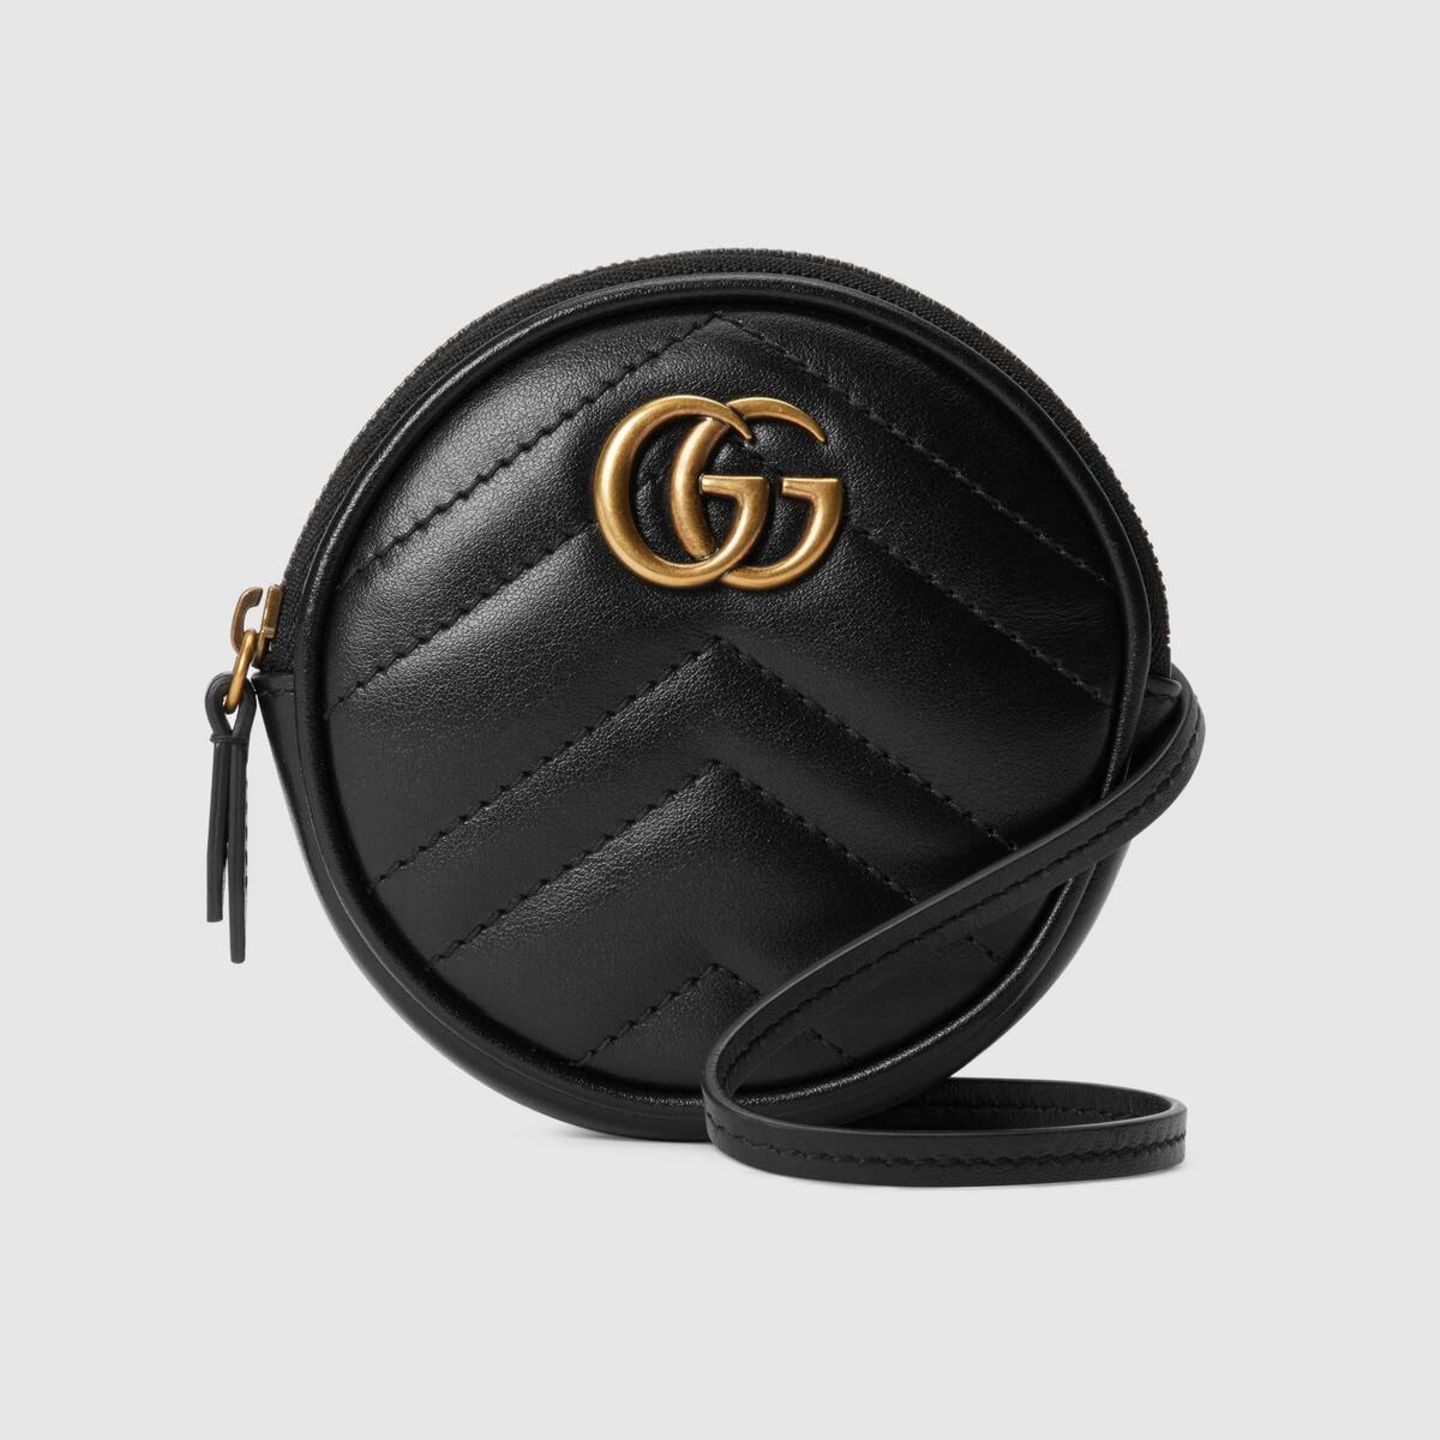 Minitasche von Gucci, um 390 Euro.